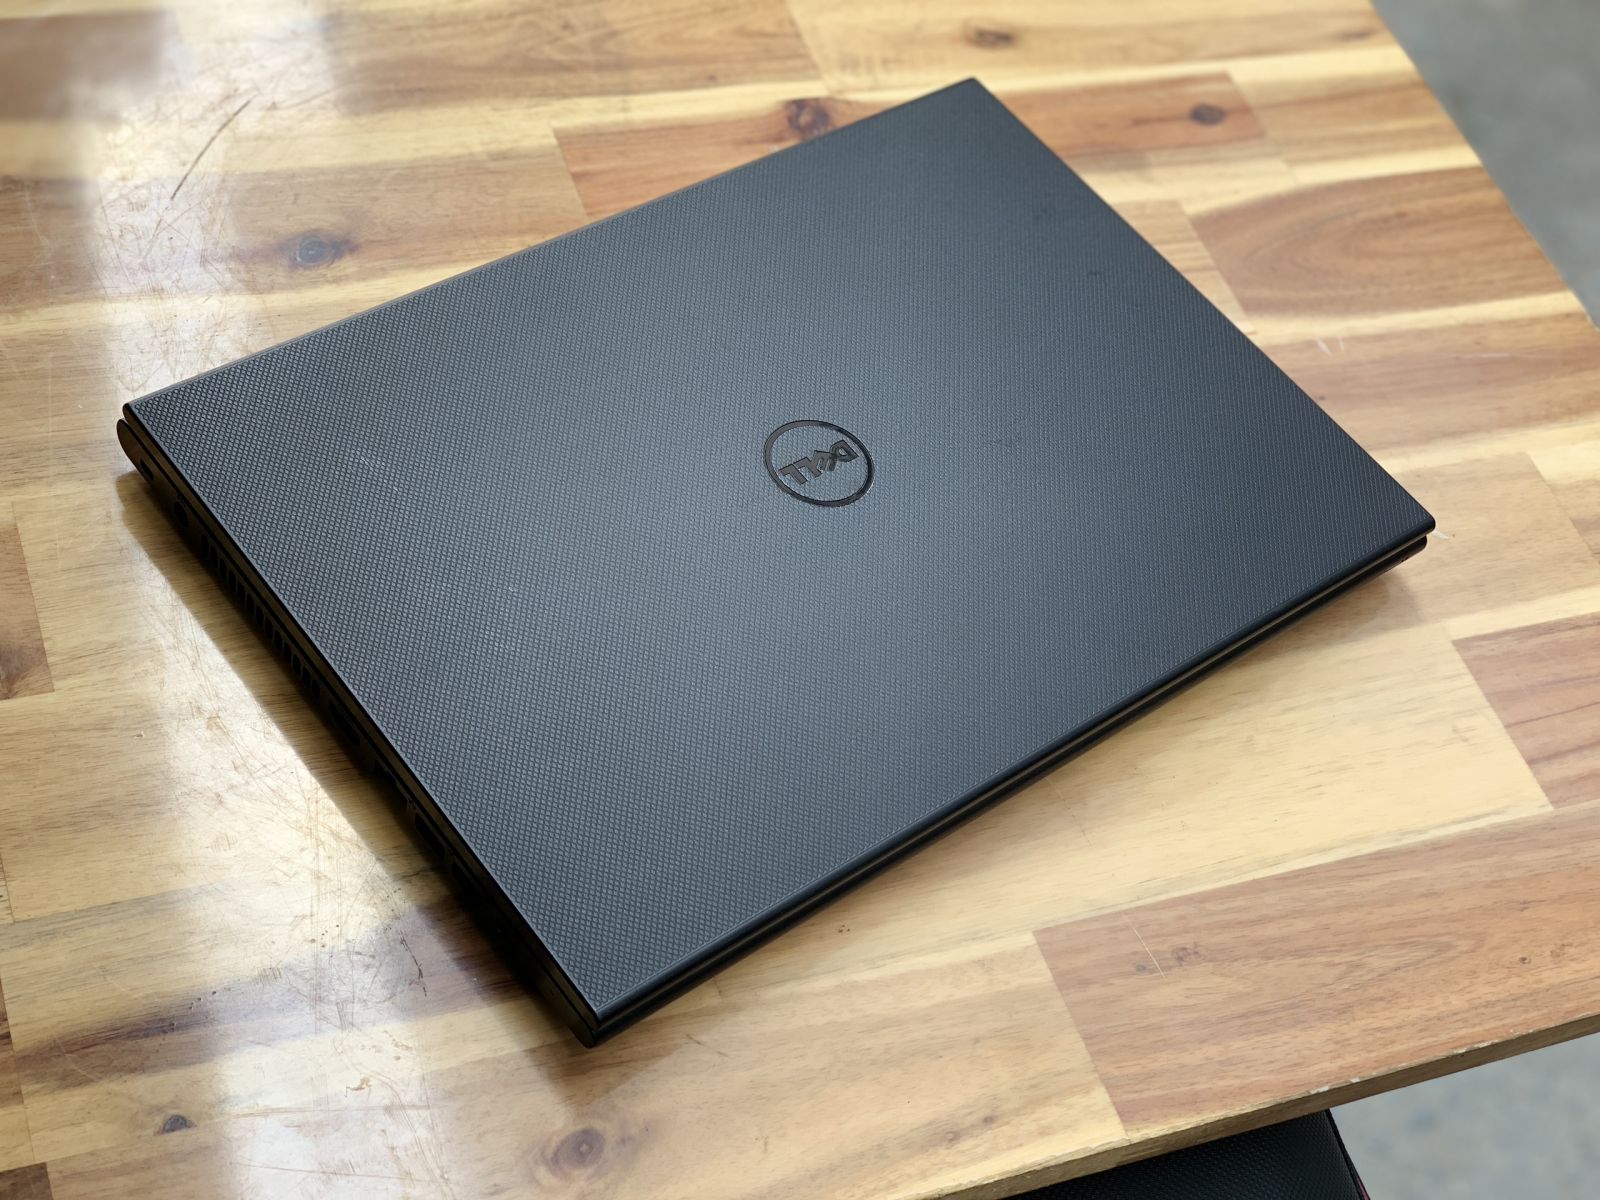 Laptop Dell Inspiron 3442, i3 4005U 4G 500G 14inch Đẹp zin 100% giá rẻ - 2